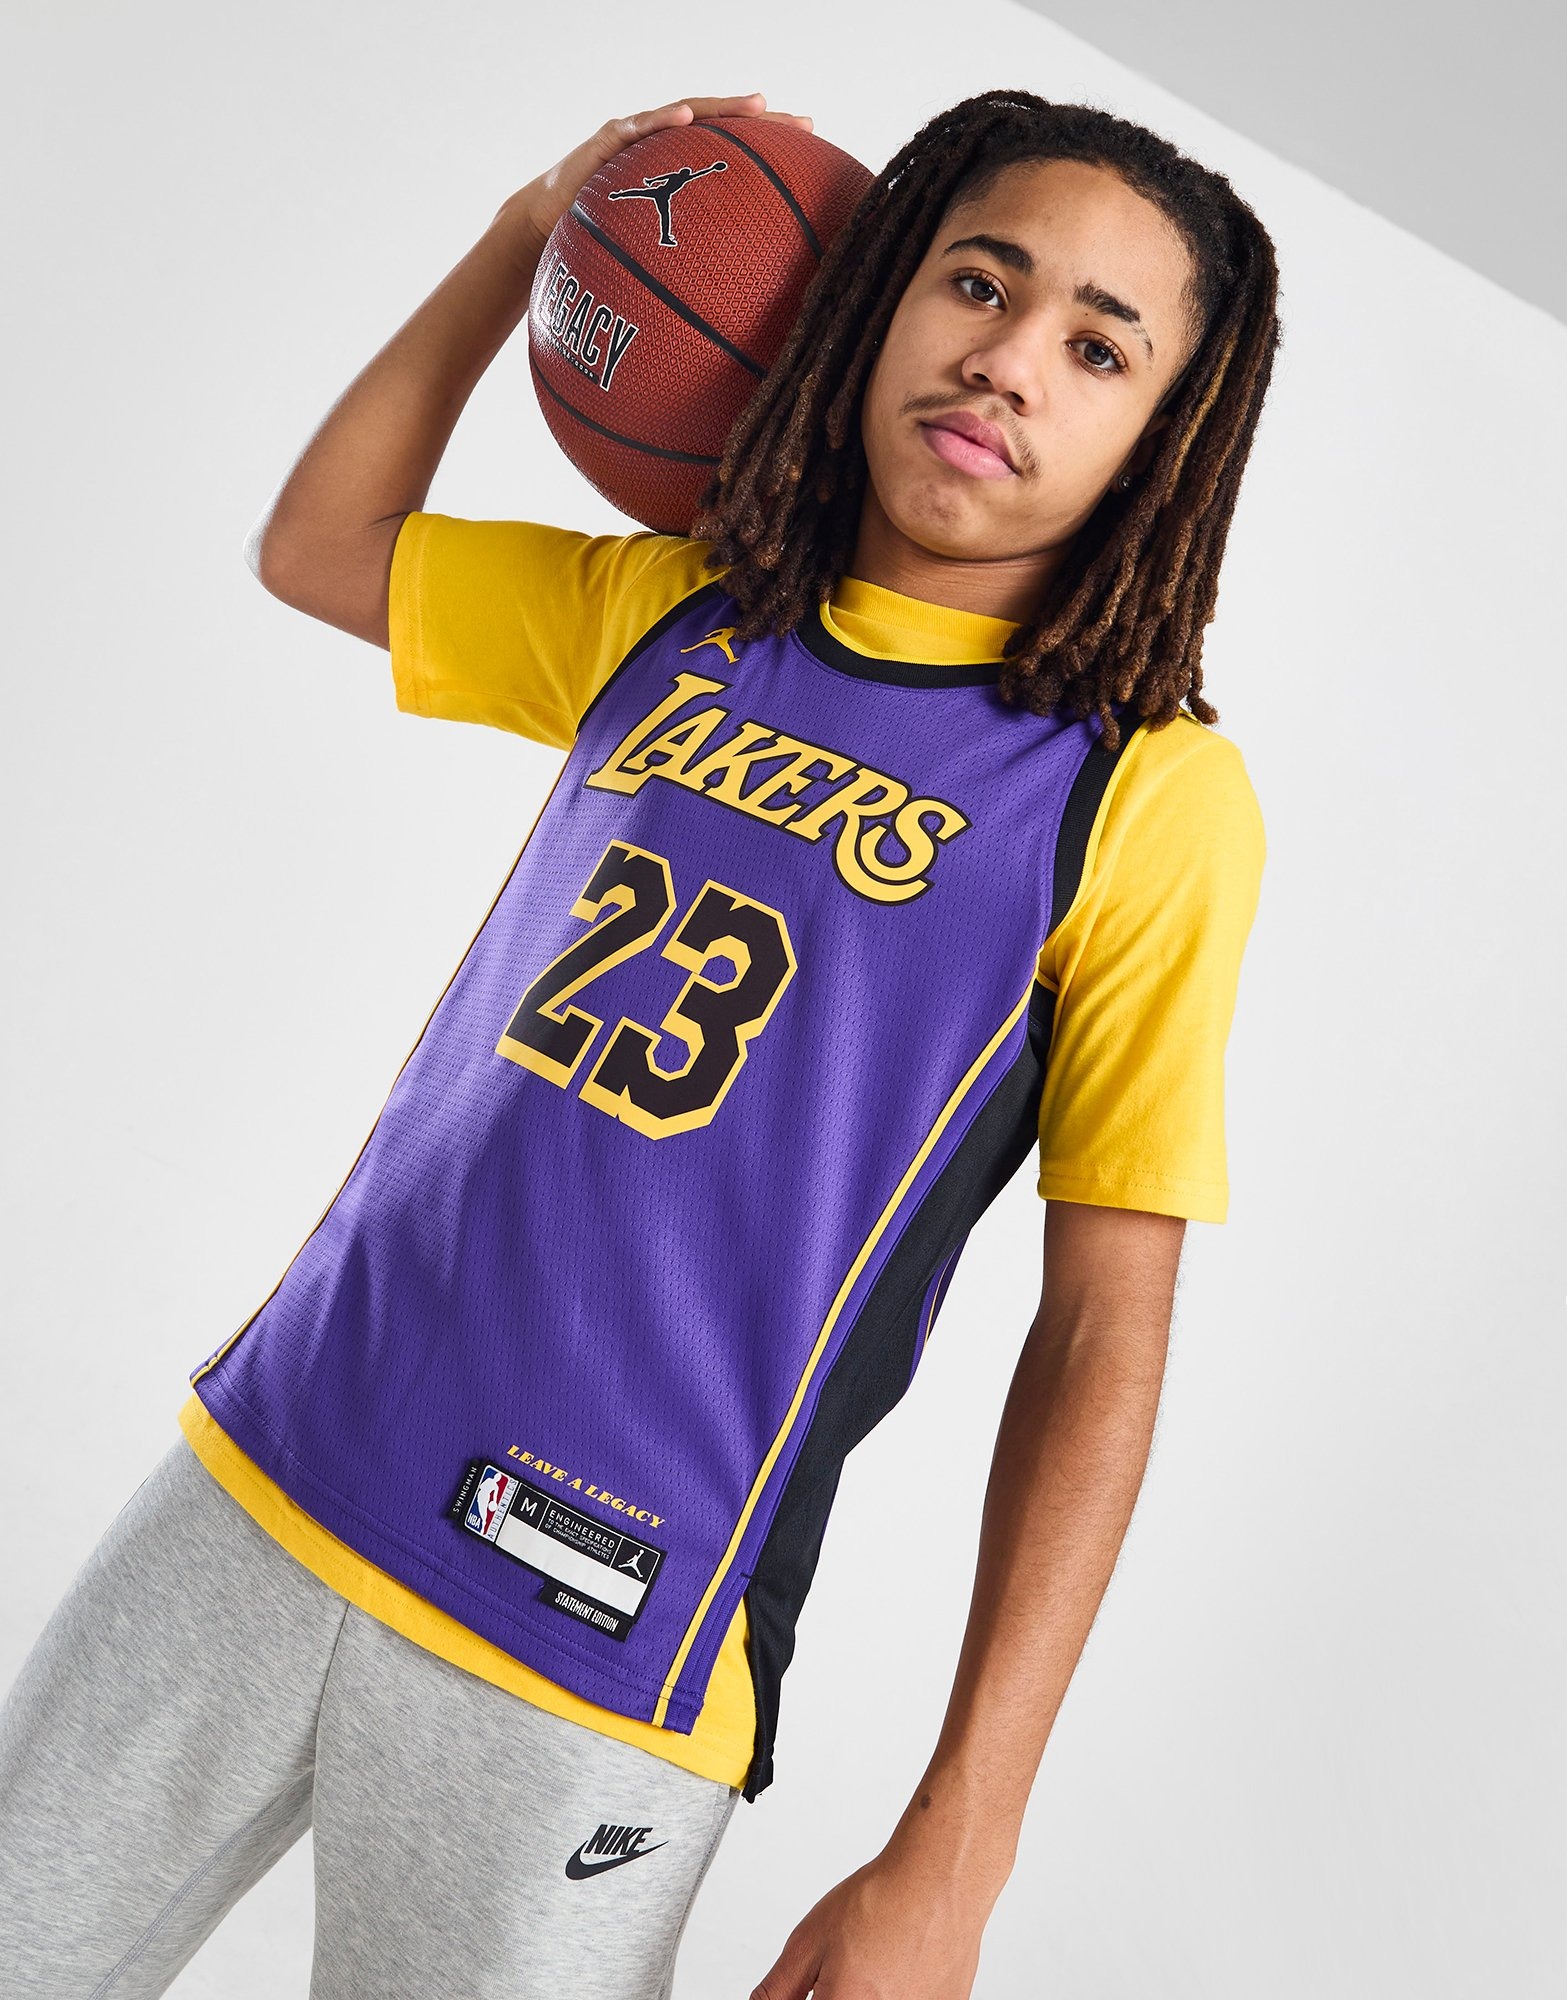 Abbigliamento Bambino (3-7 anni) - LA Lakers